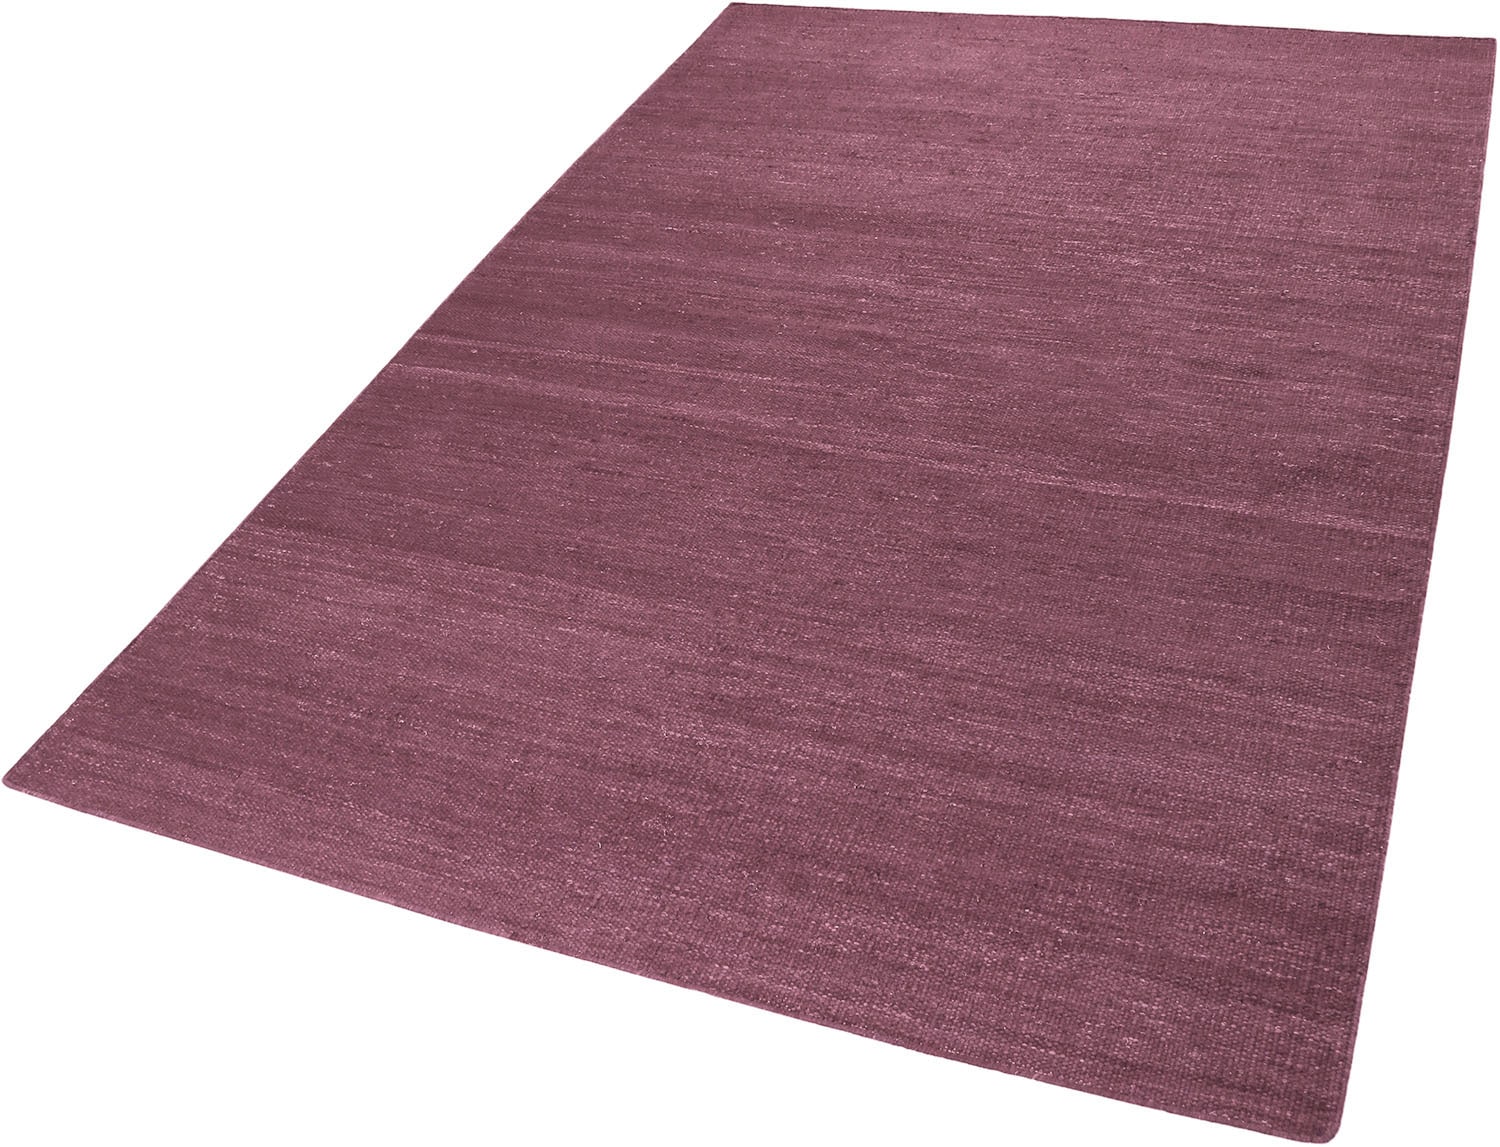 Esprit Teppich »Rainbow Kelim«, rechteckig, Flachgewebe aus 100% Baumwolle, Wohnzimmer, Kinderzimmer, einfarbig